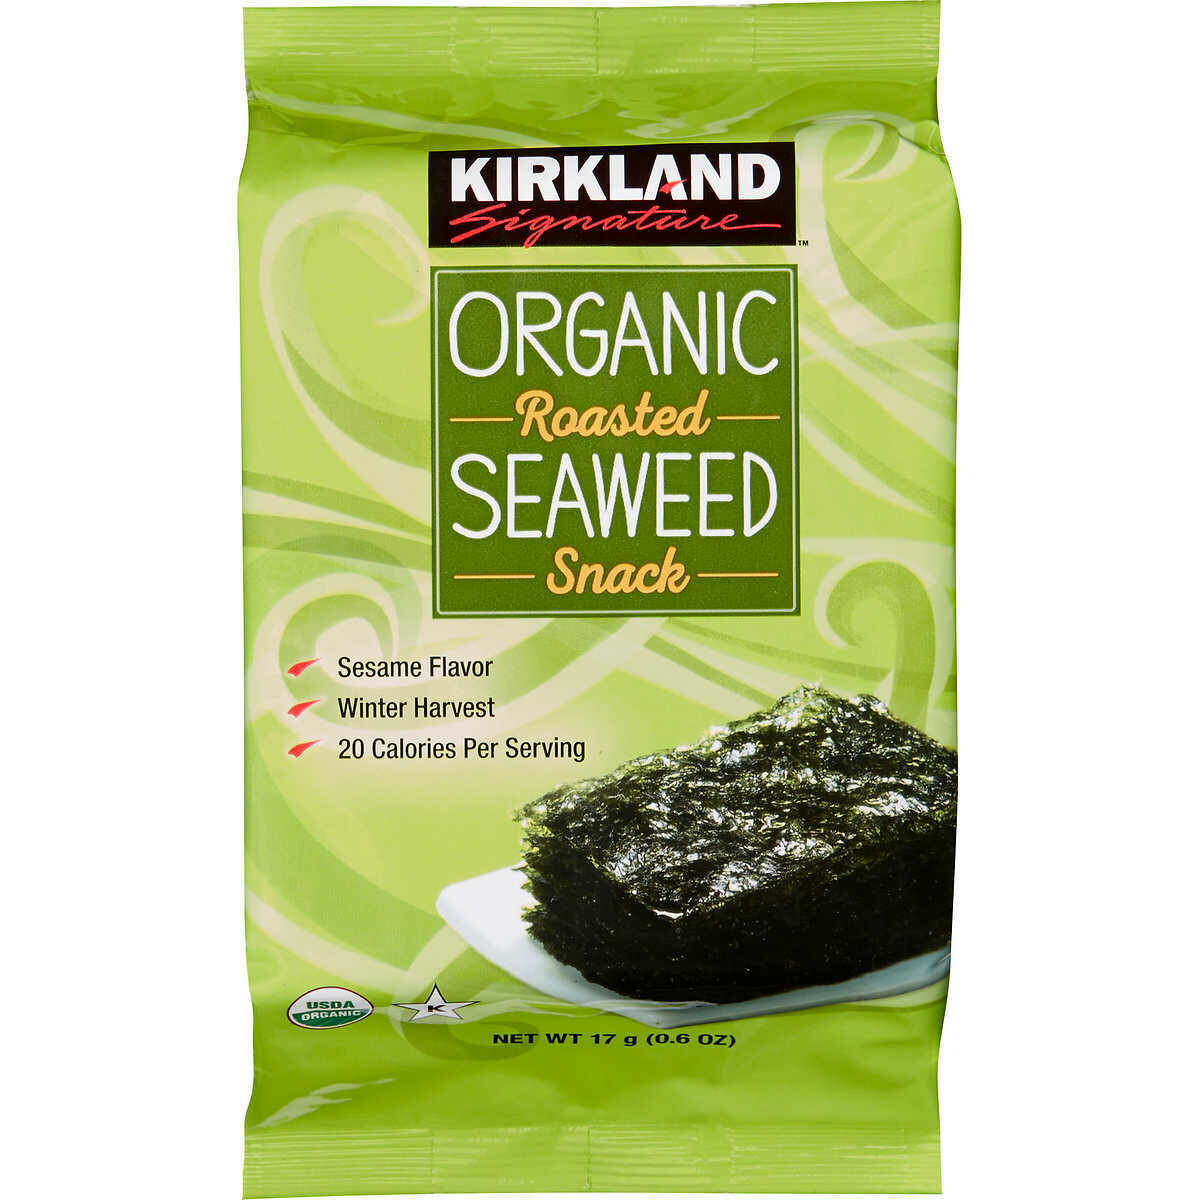 Kirkland Organic Roasted Seaweed Snack